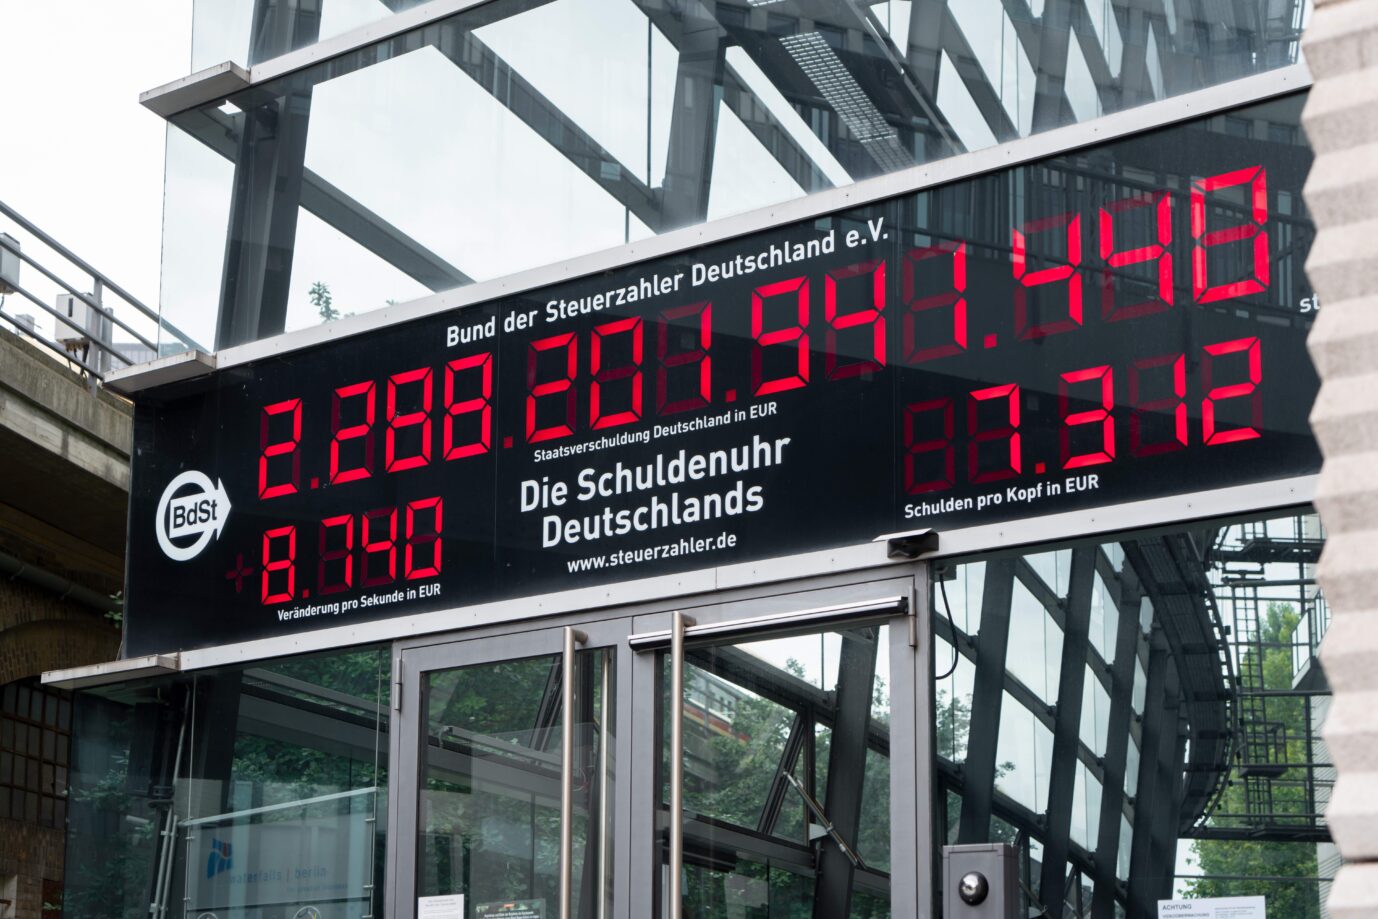 Die Schuldenuhr Deutschlands in Berlin